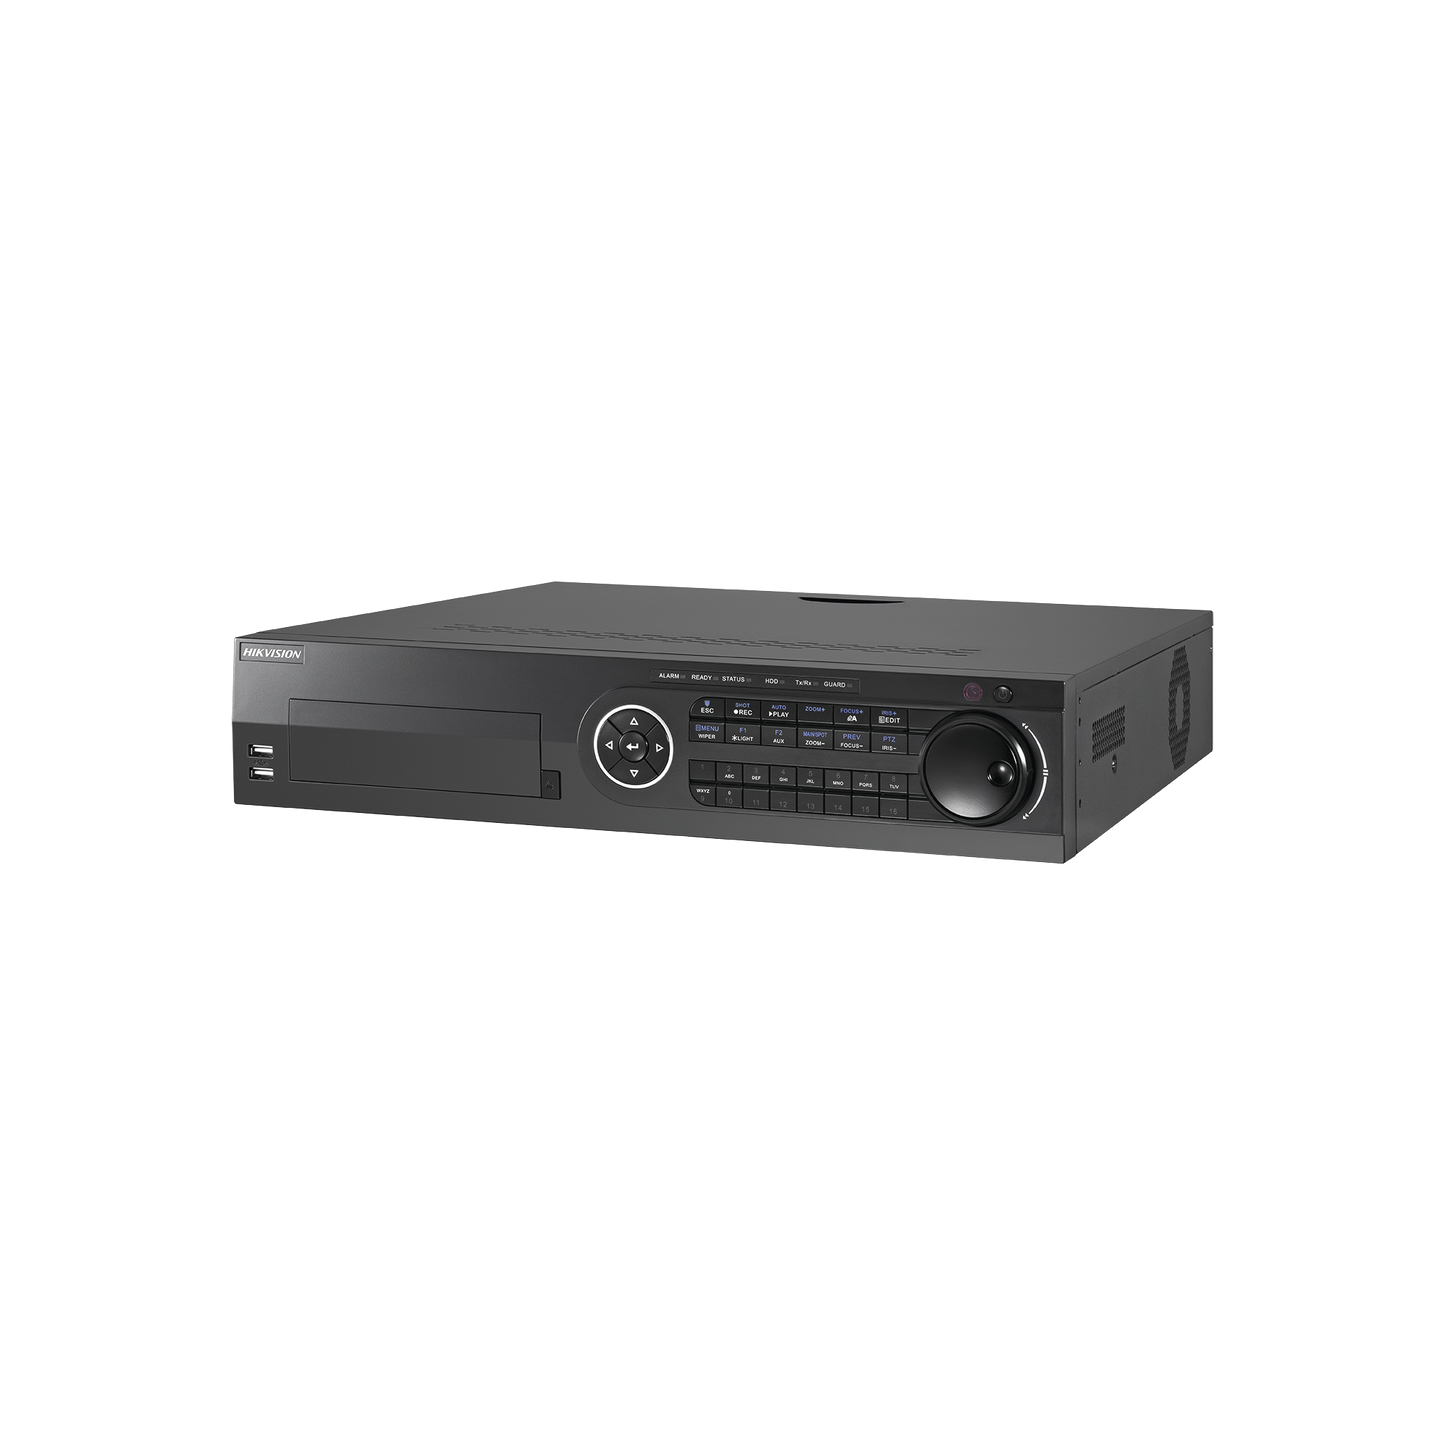 DVR 4 Megapixel / 16 Canales TURBOHD + 4 Canales IP / 8 Bahías de Disco Duro / 16 canales de Audio / Audio por Coaxitron  / 16 Entradas de Alarma / Soporta POS